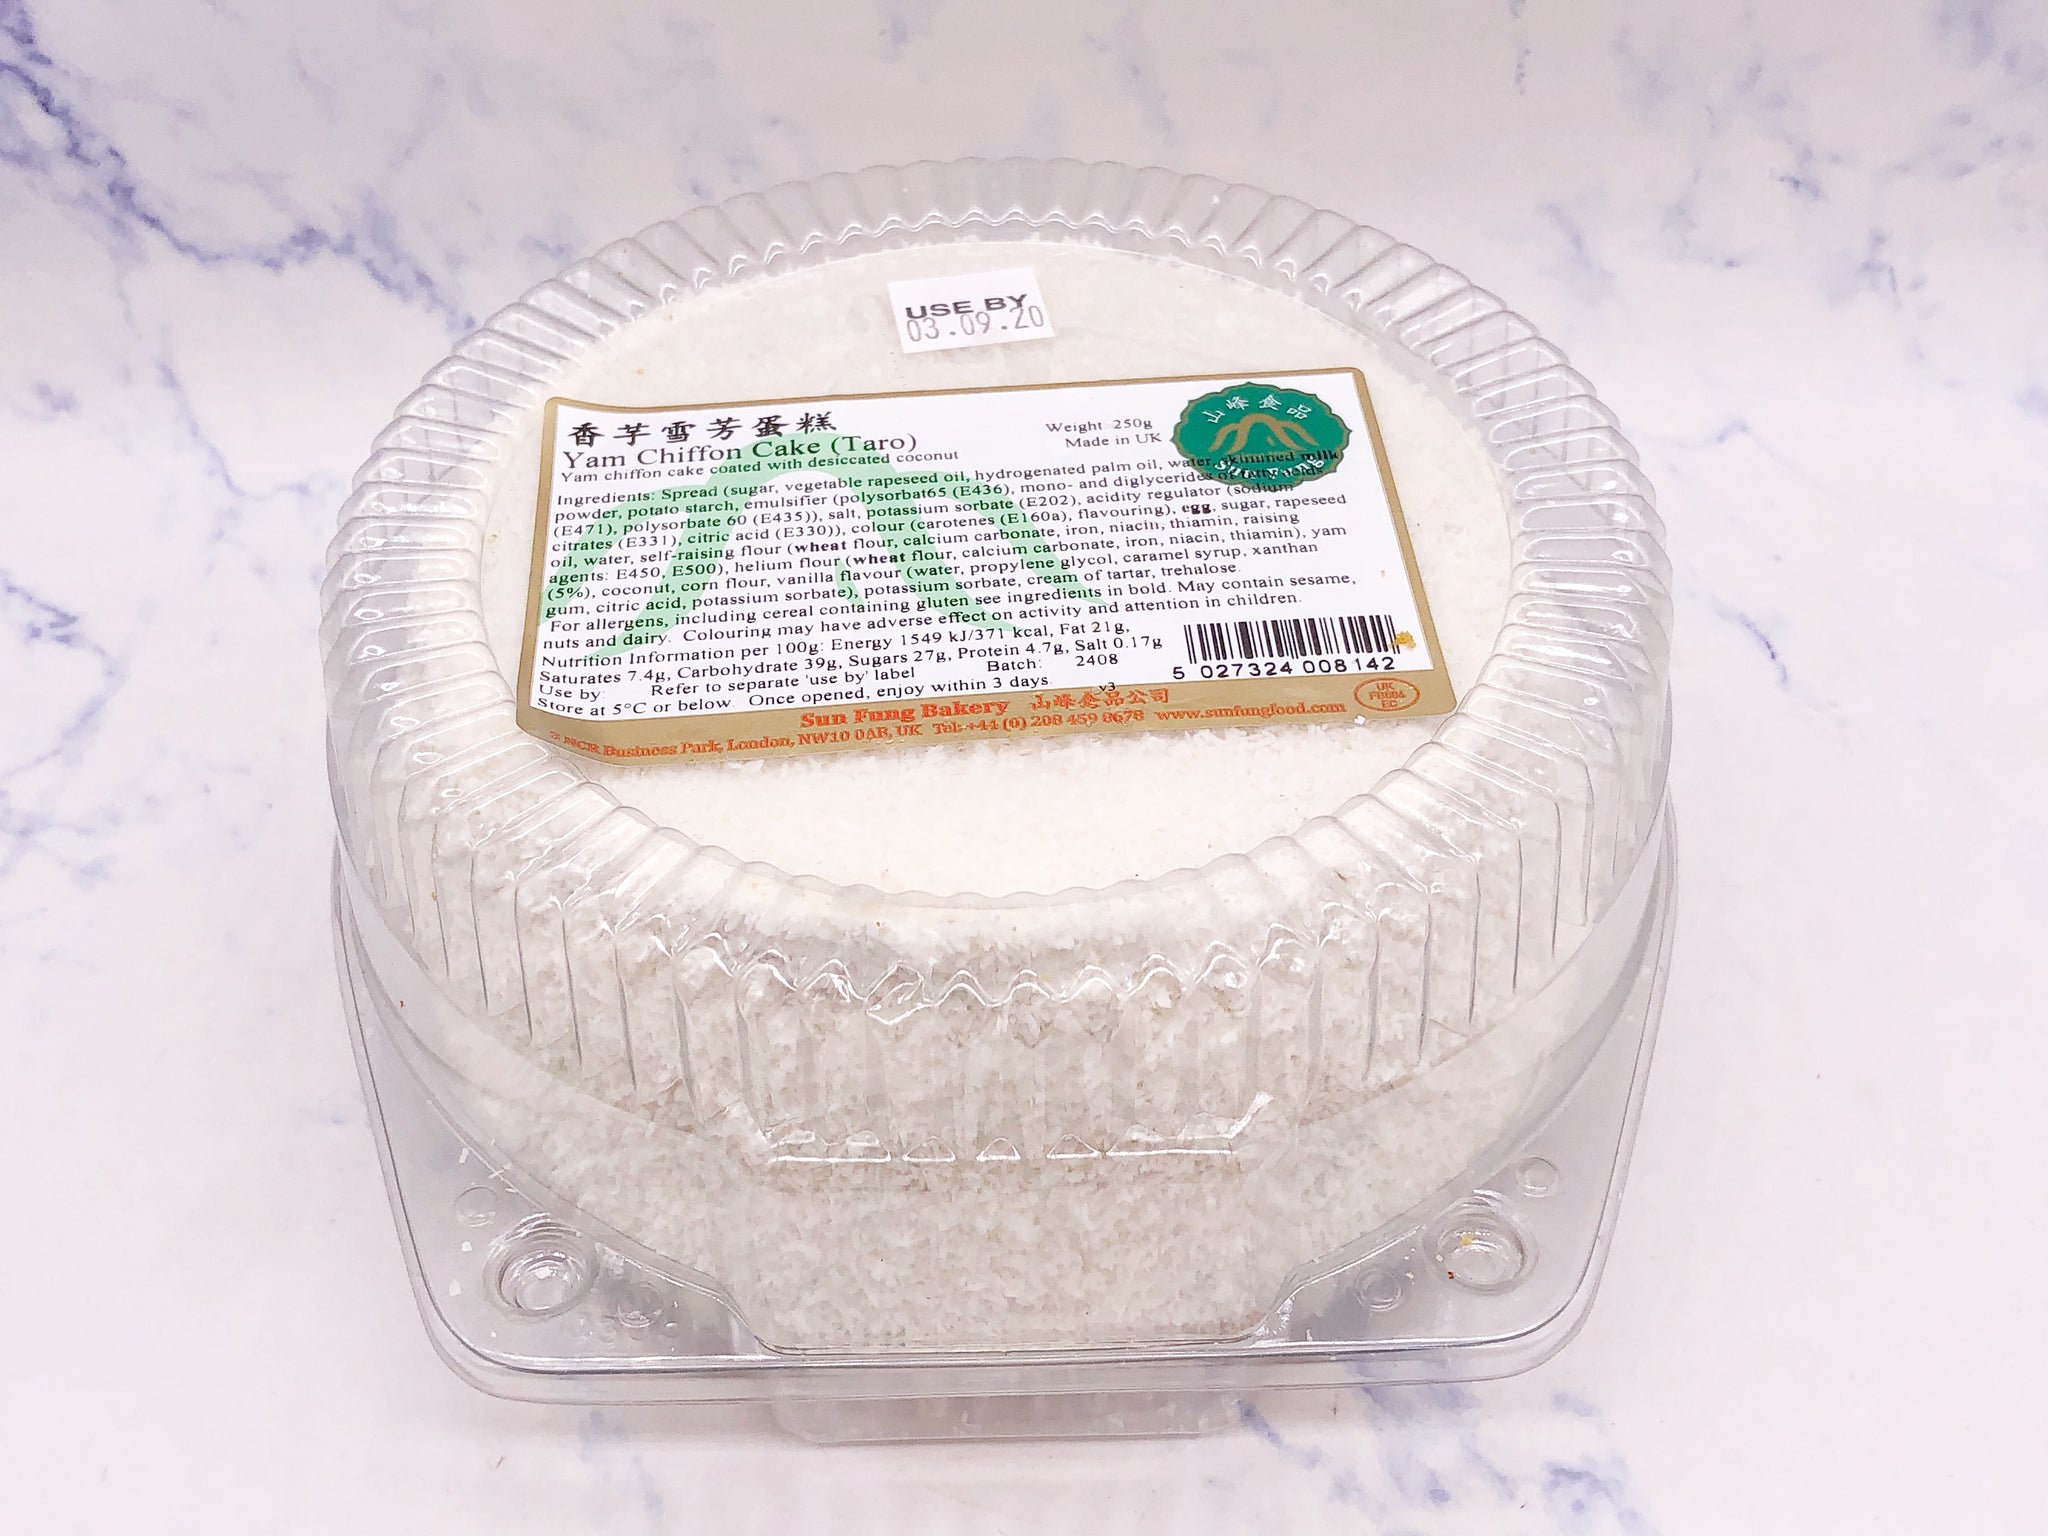 （限首页伦敦地址！）香芋雪芳戚风蛋糕-冷藏 BBD: 20.09.2021 Yam Chiffon Cake